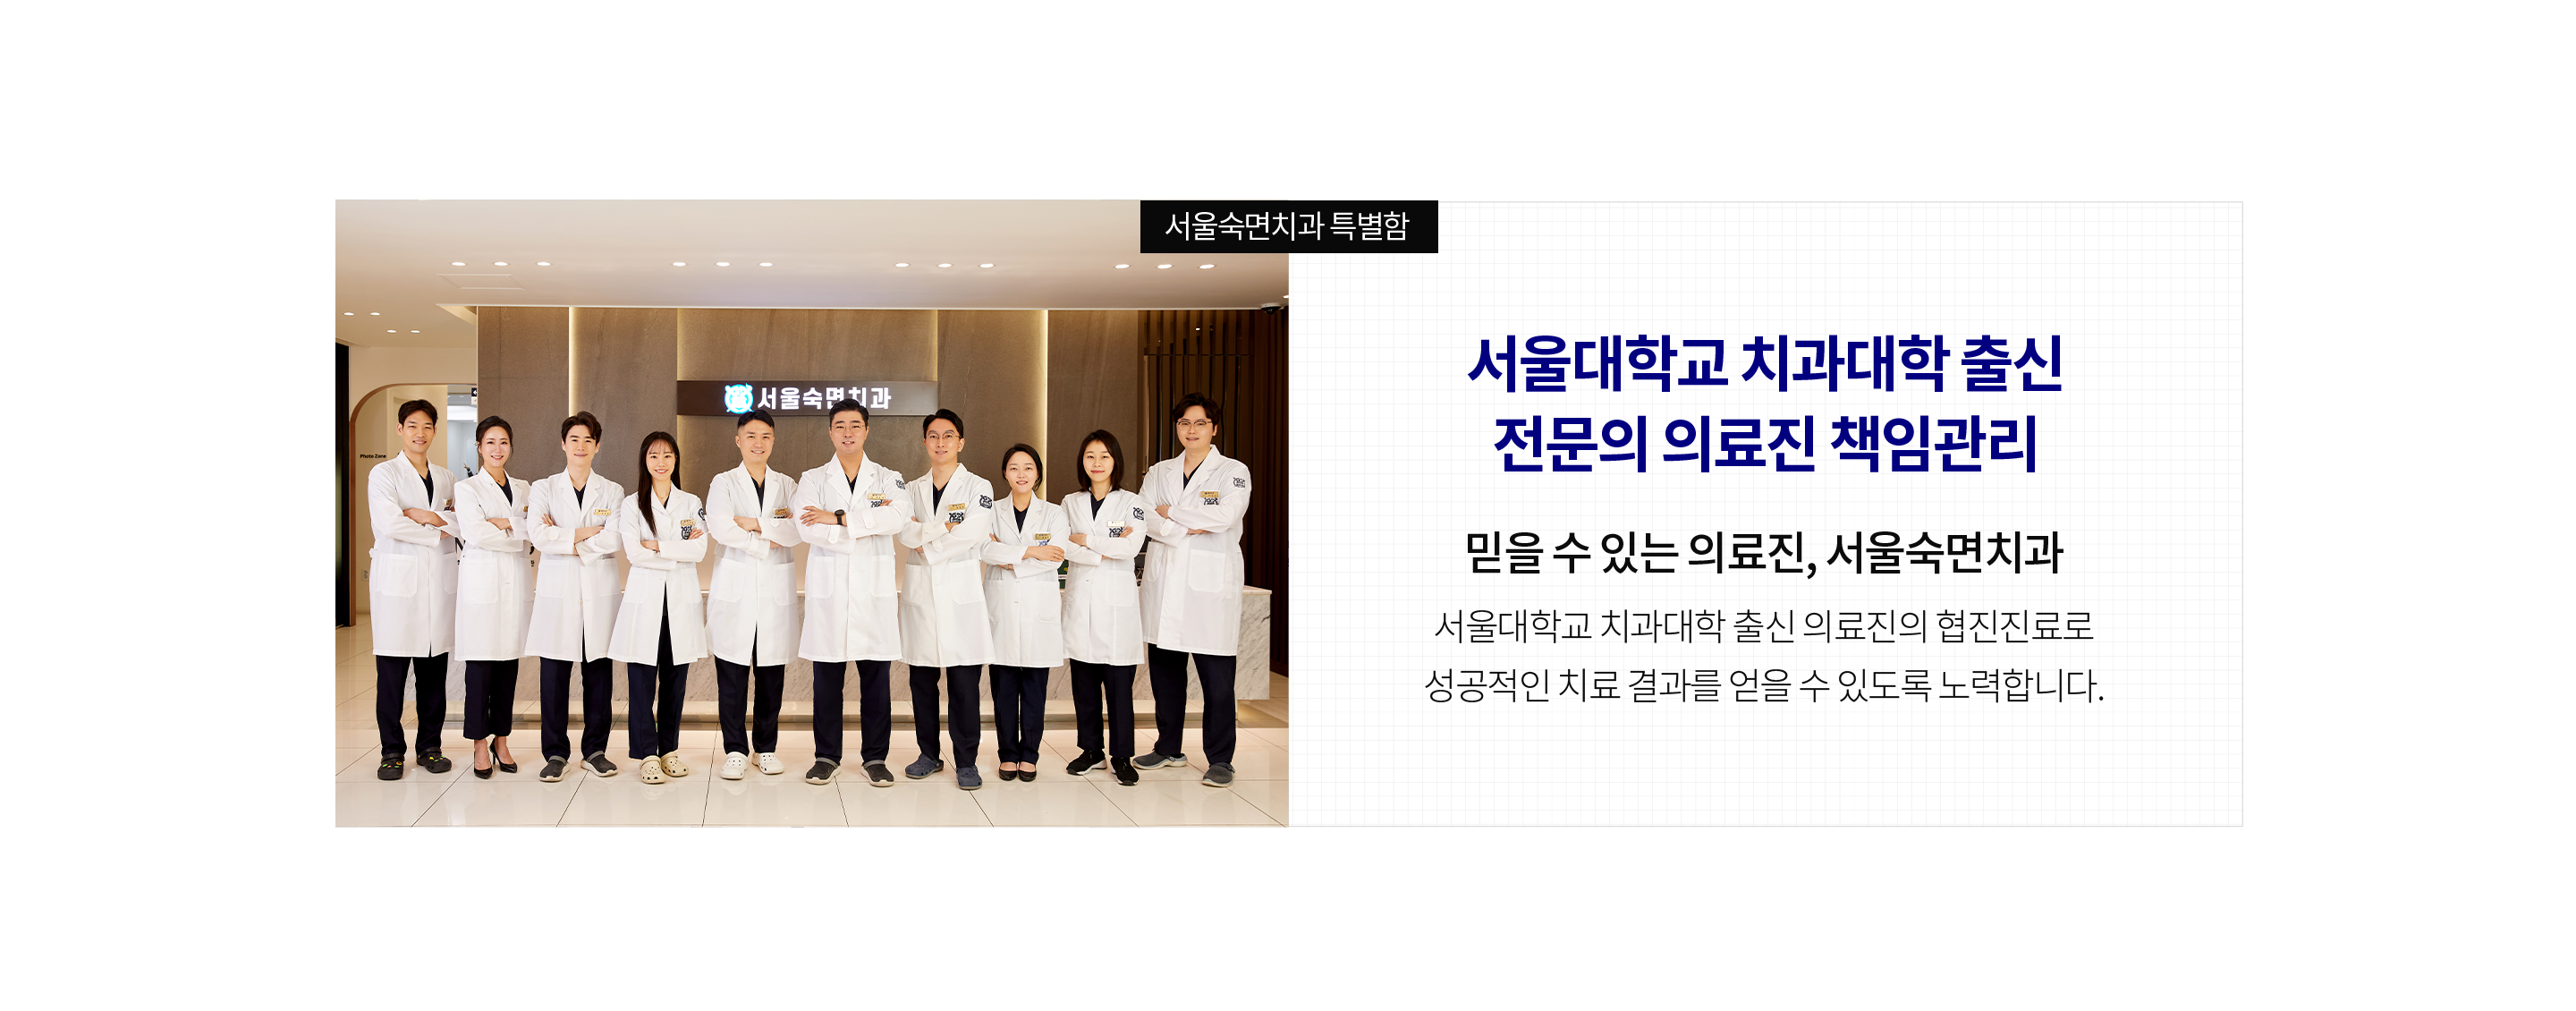 서울대학교-치과대학-출신-전문의-의료진-책임관리-믿을-수-있는-의료진-서울숙면치과-서울대학교-치과대학-출신-의료진의-협진-진료로-성공적인-치료-결과를-얻을-수-있도록-노력합니다